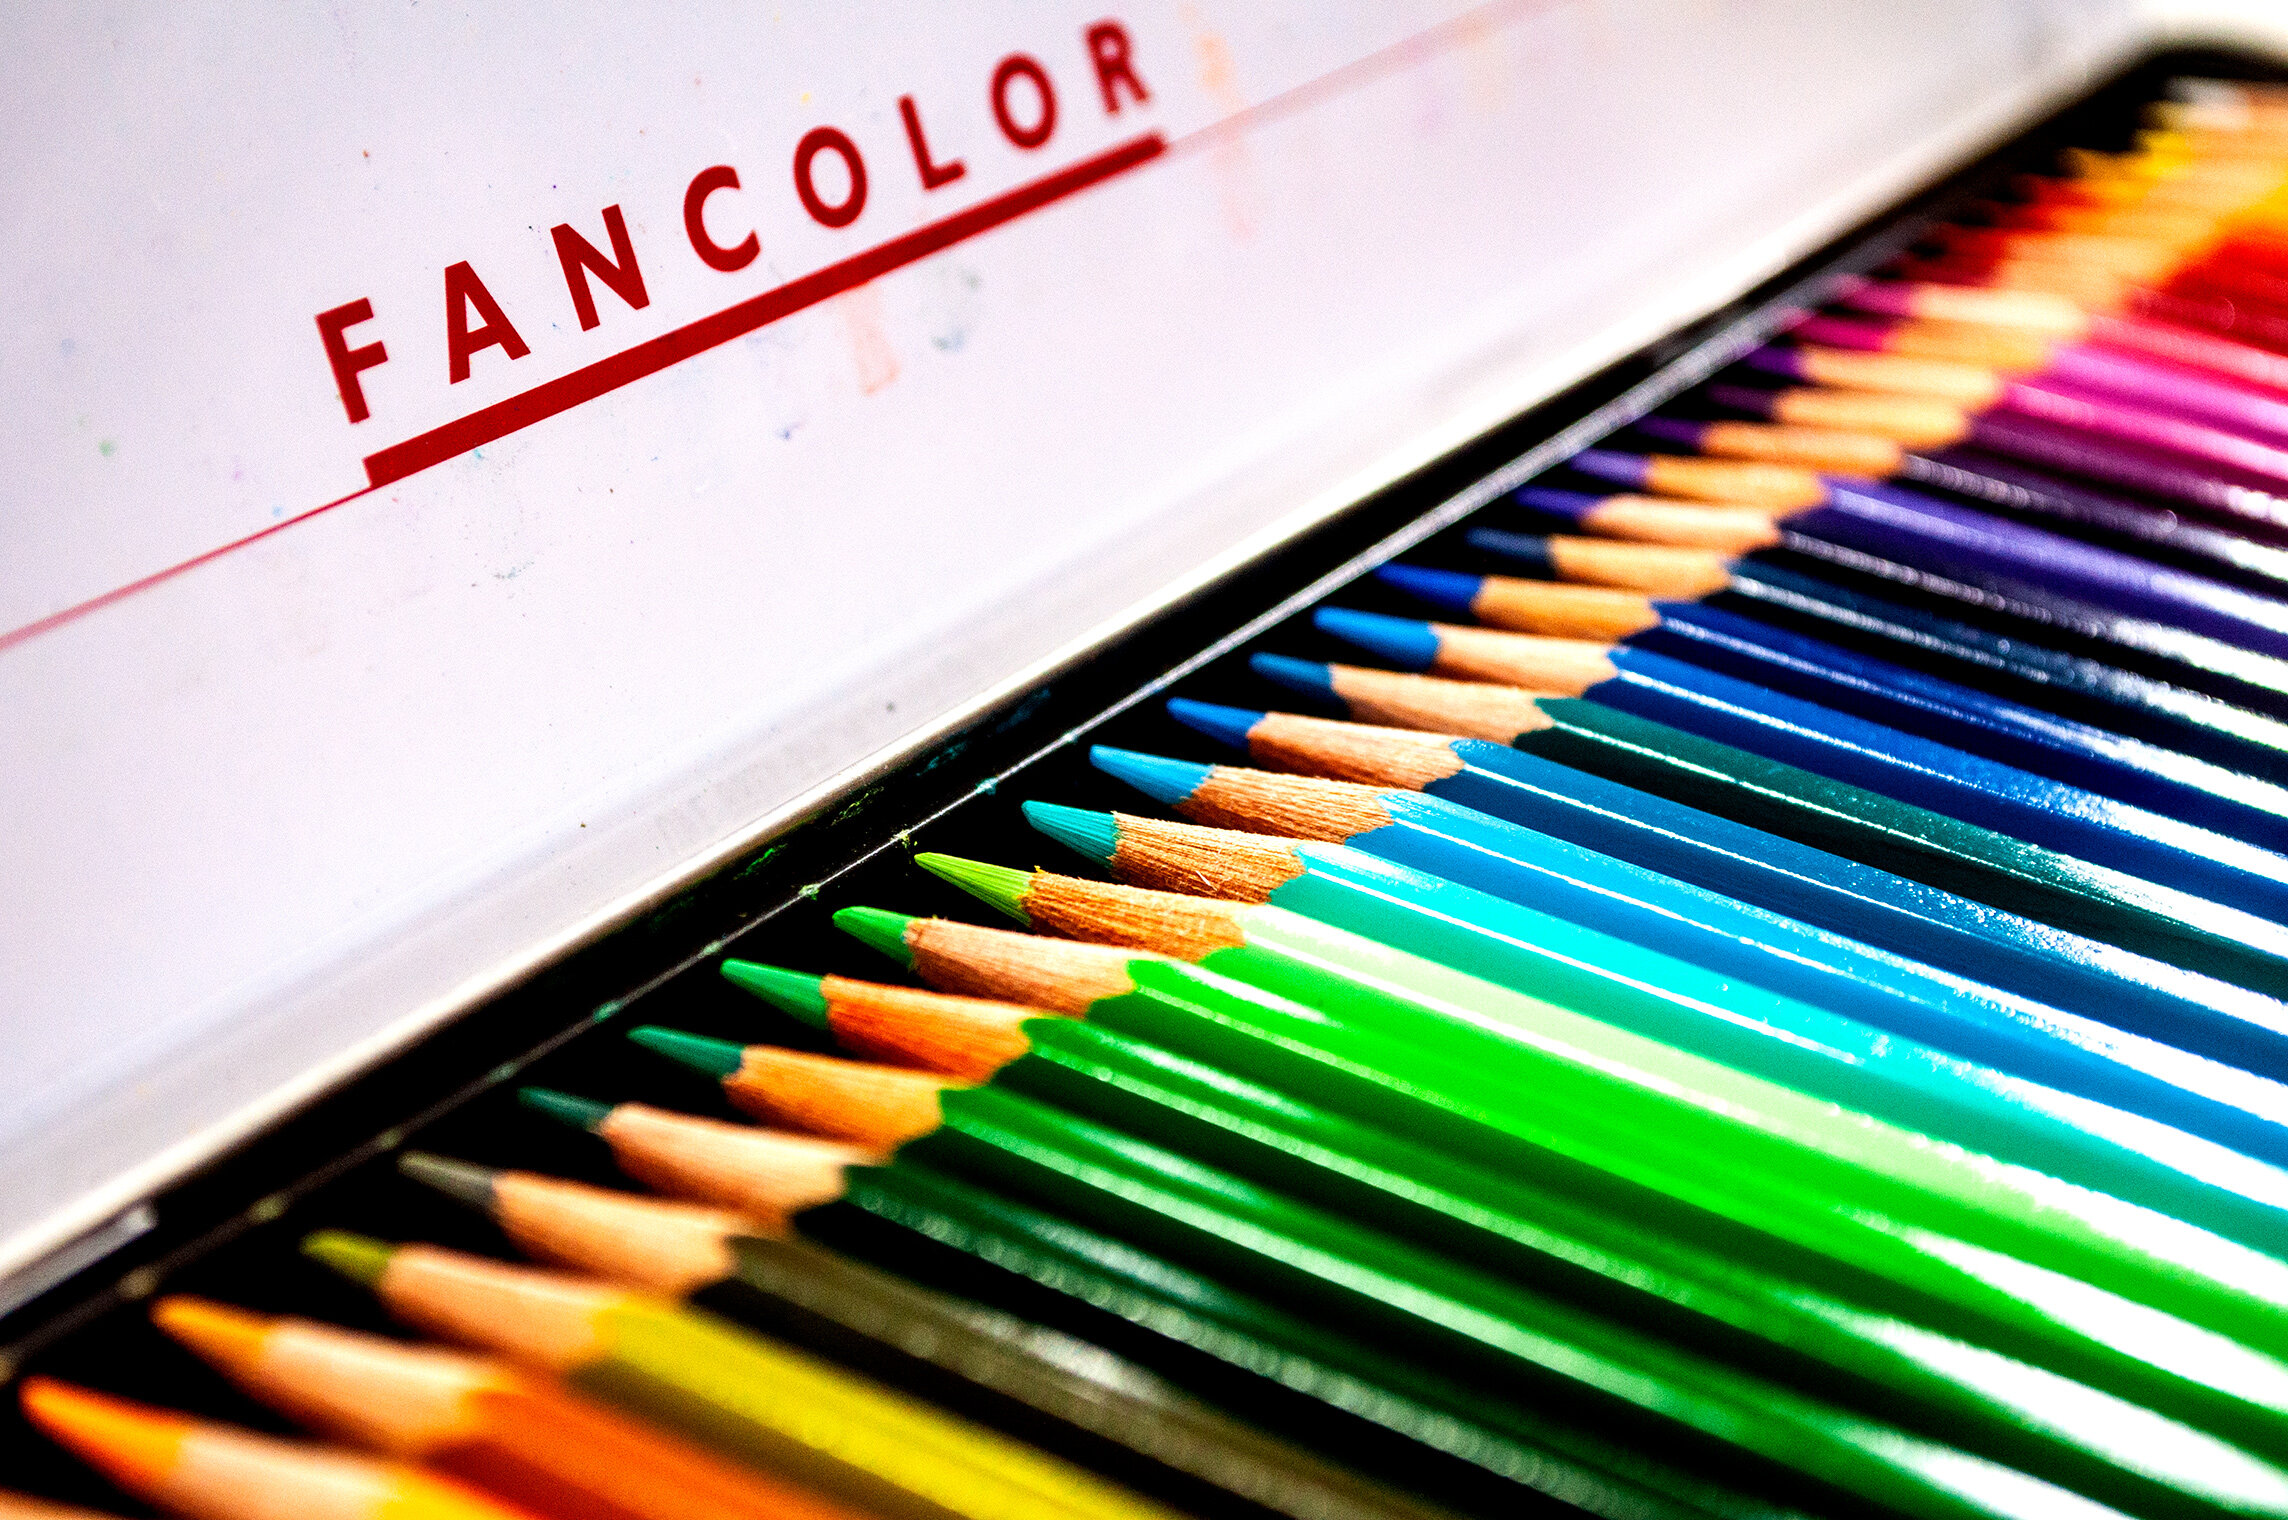 Caran d'Ache Fibralo Marker Set - Assorted Colors, Set of 30 